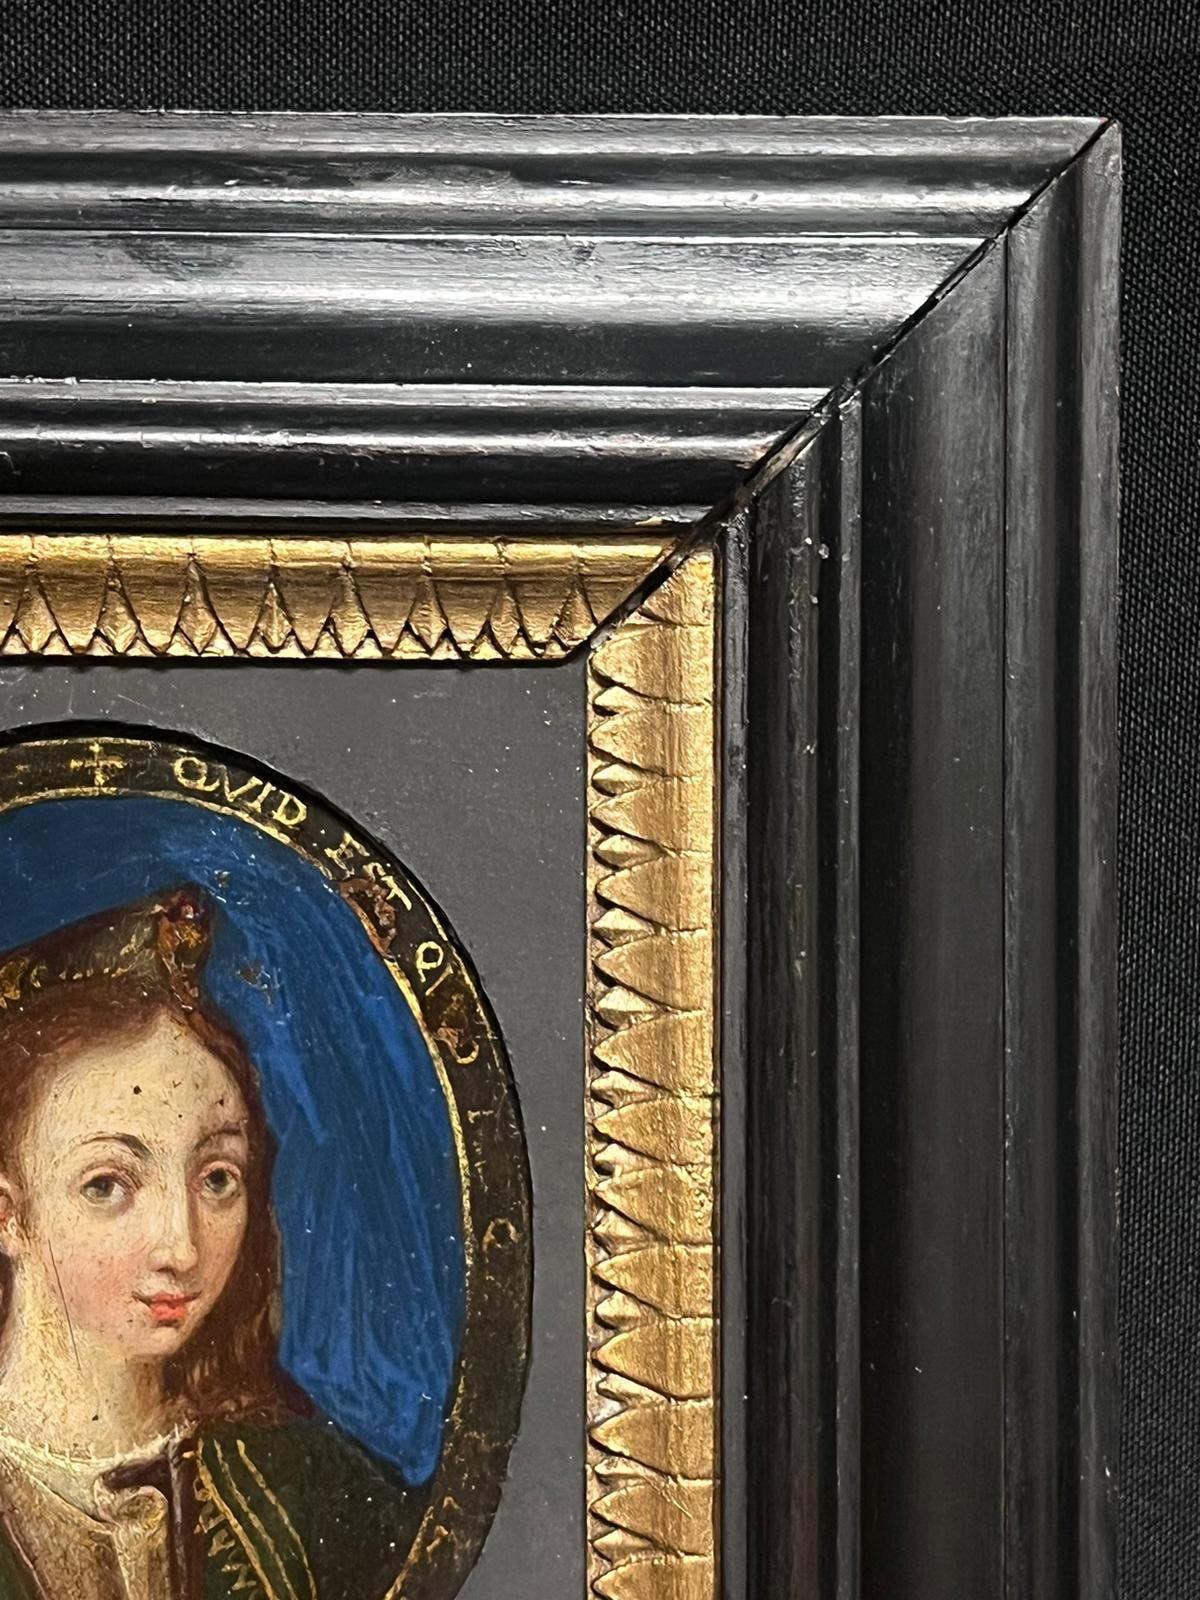 Porträt einer Dame
Italienischer Altmeister, 17. Jahrhundert
Öl auf Kupfer, gerahmt
Gerahmt: 8,75 x 7,75 Zoll
Gemälde: 5 x 4 Zoll
Provenienz: Privatsammlung, England
Zustand: sehr guter und gesunder Zustand 